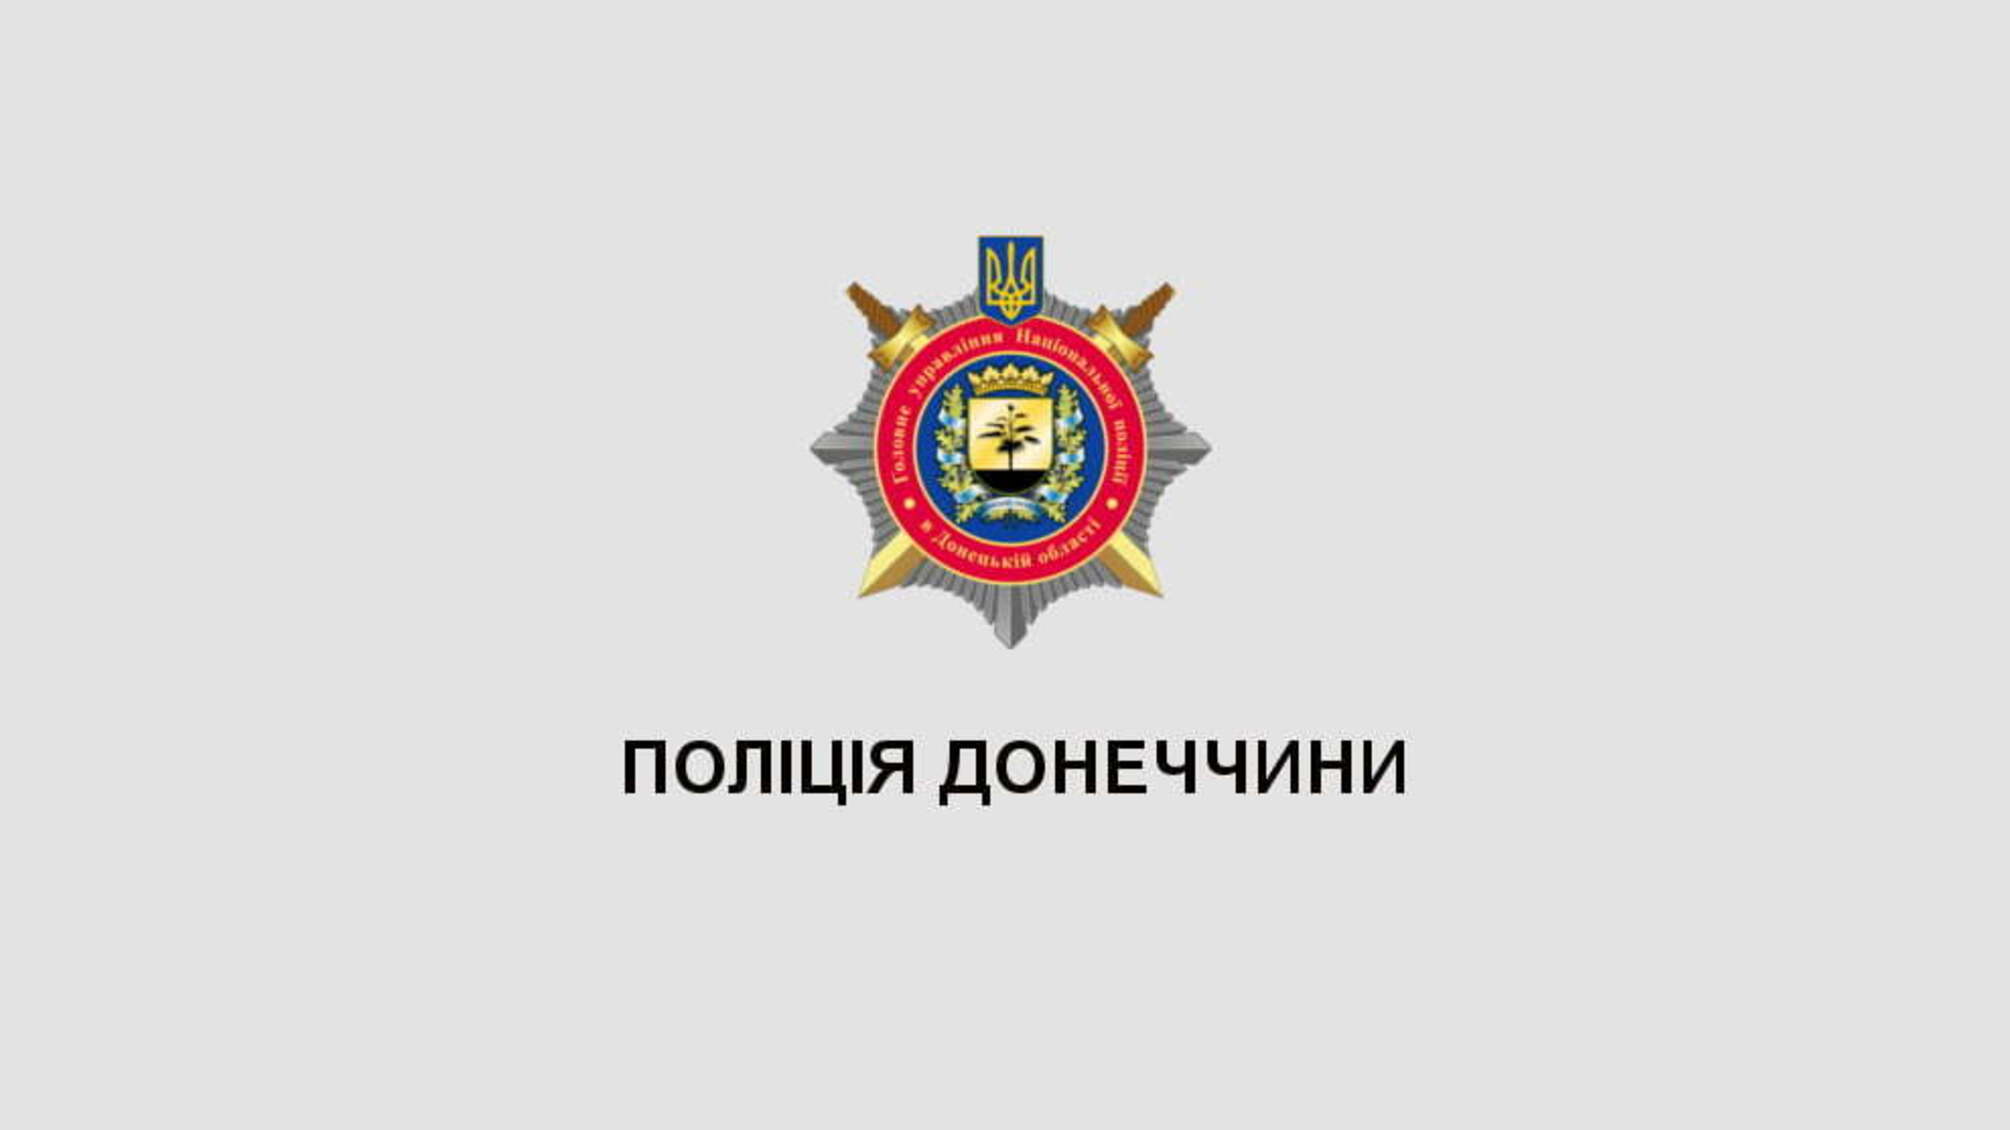 За фактом пожежі на території Регіонального ландшафтного парку в Краматорську поліцейські відкрили кримінальне провадження